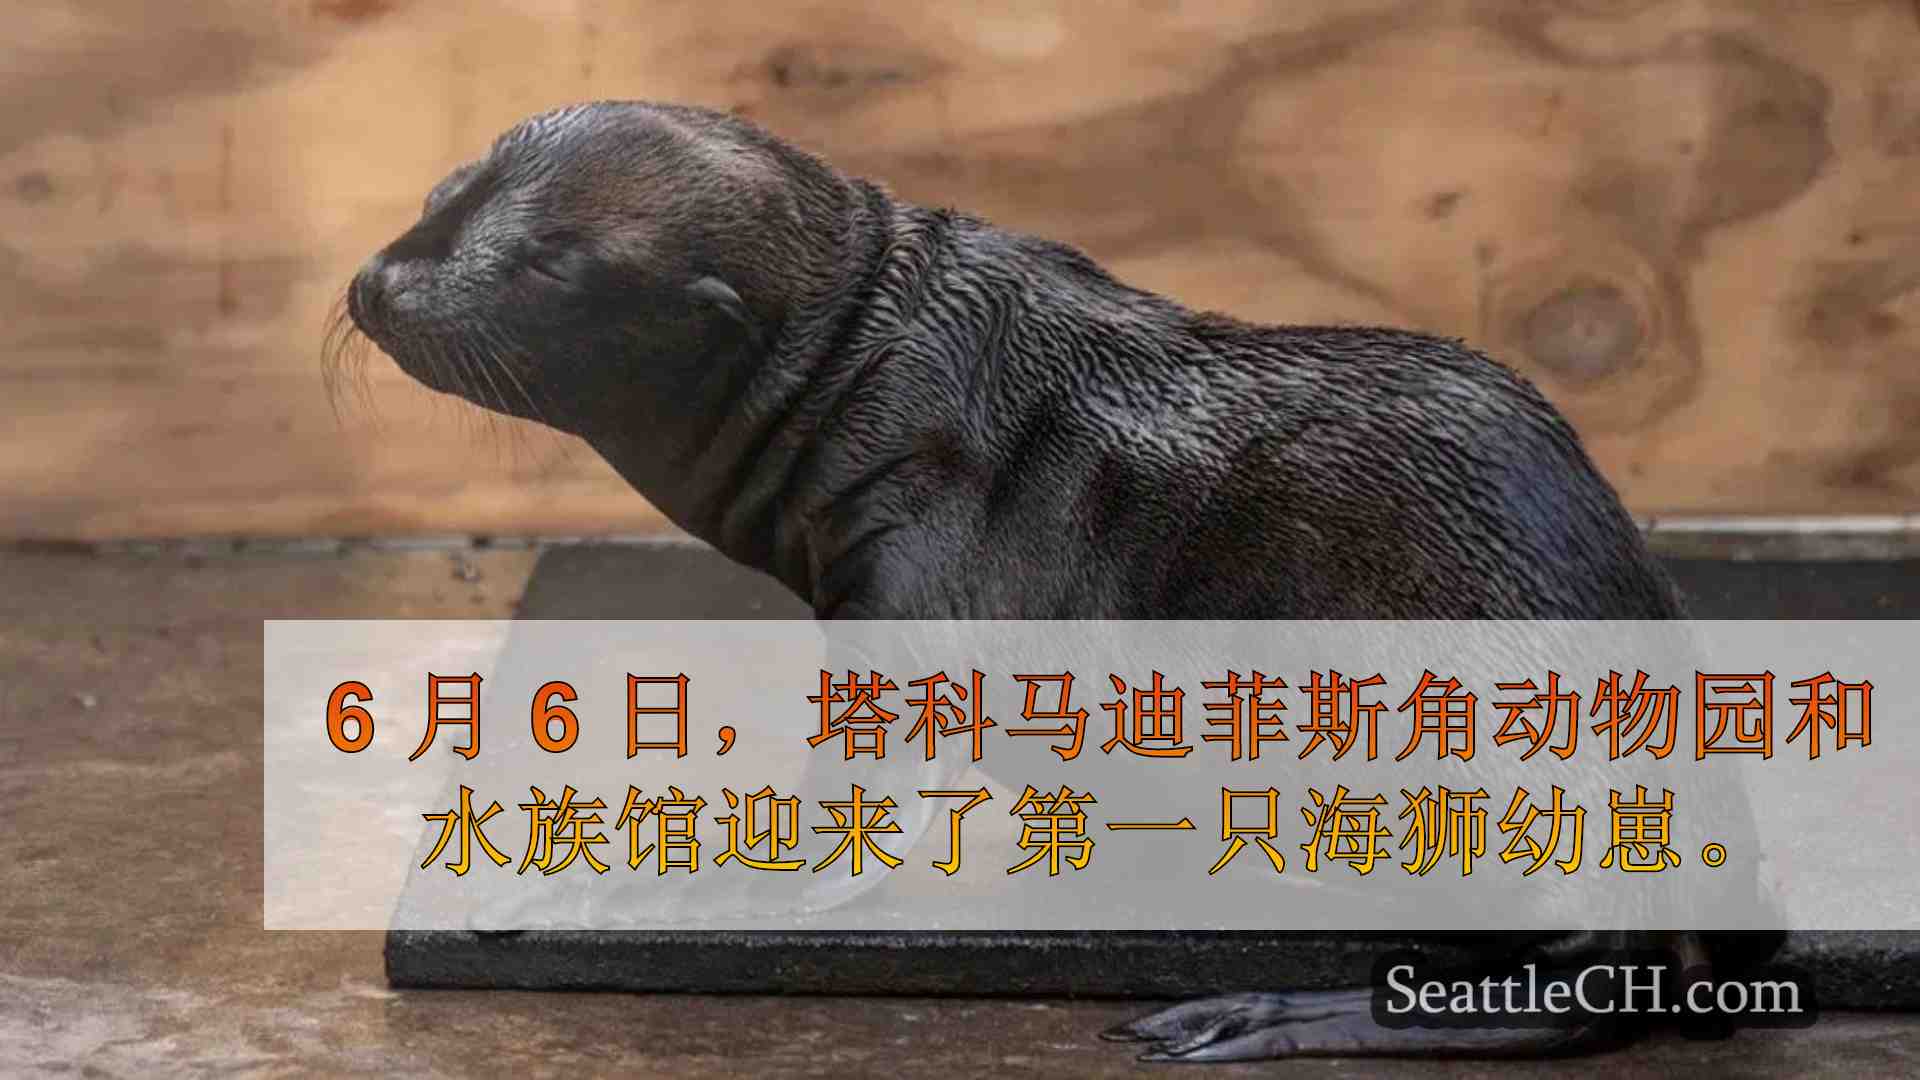 迪菲斯角动物园迎来 119 年历史上第一只海狮幼崽